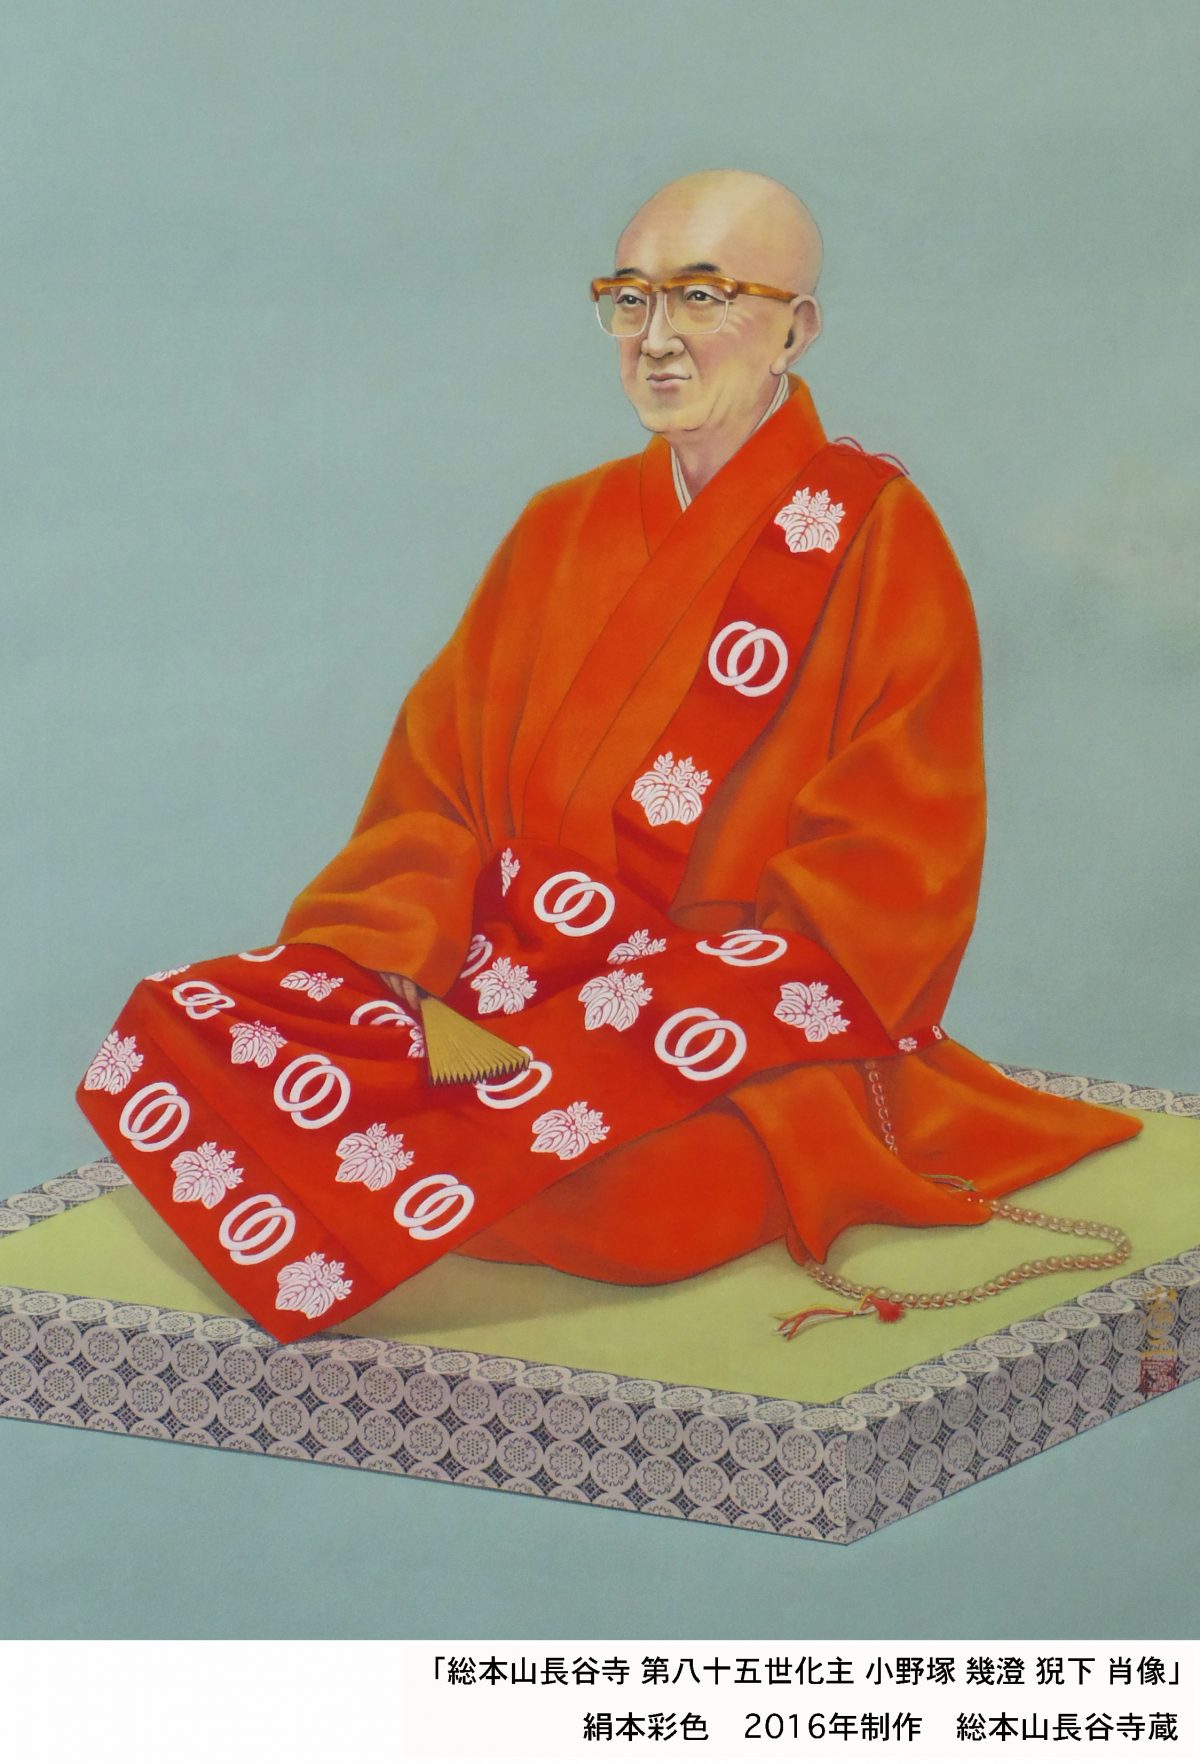 総本山長谷寺 第八十五世化主 肖像